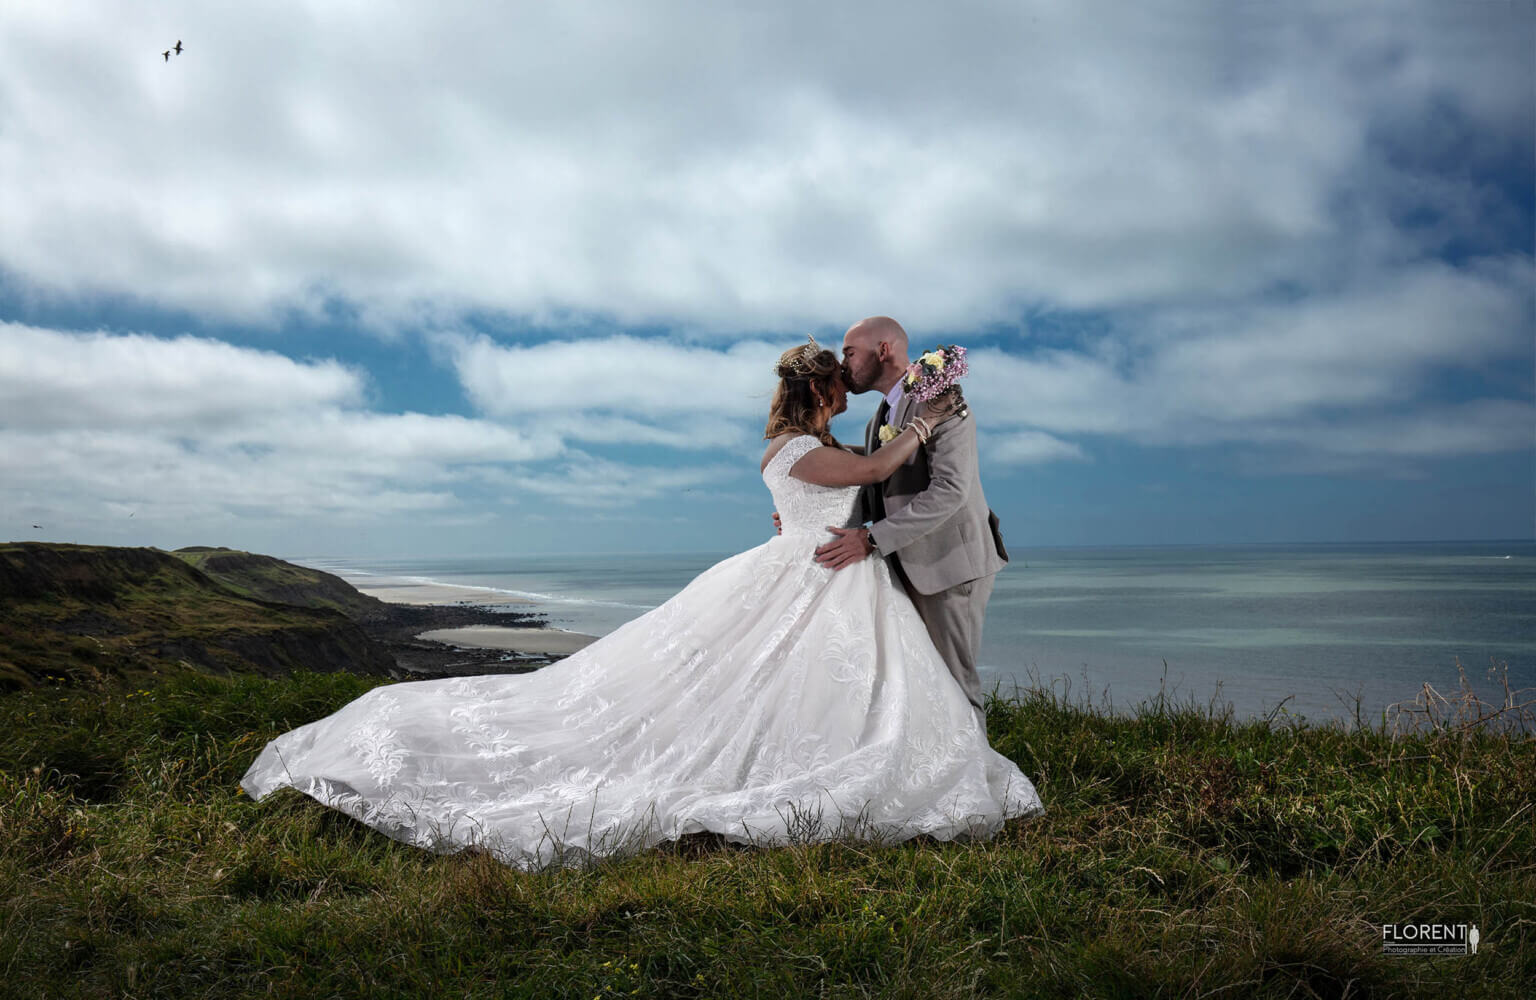 photo marié sur une falaise au dessus de la mer s'embrassent avec amour florent studio boulogne sur mer lille le touquet paris